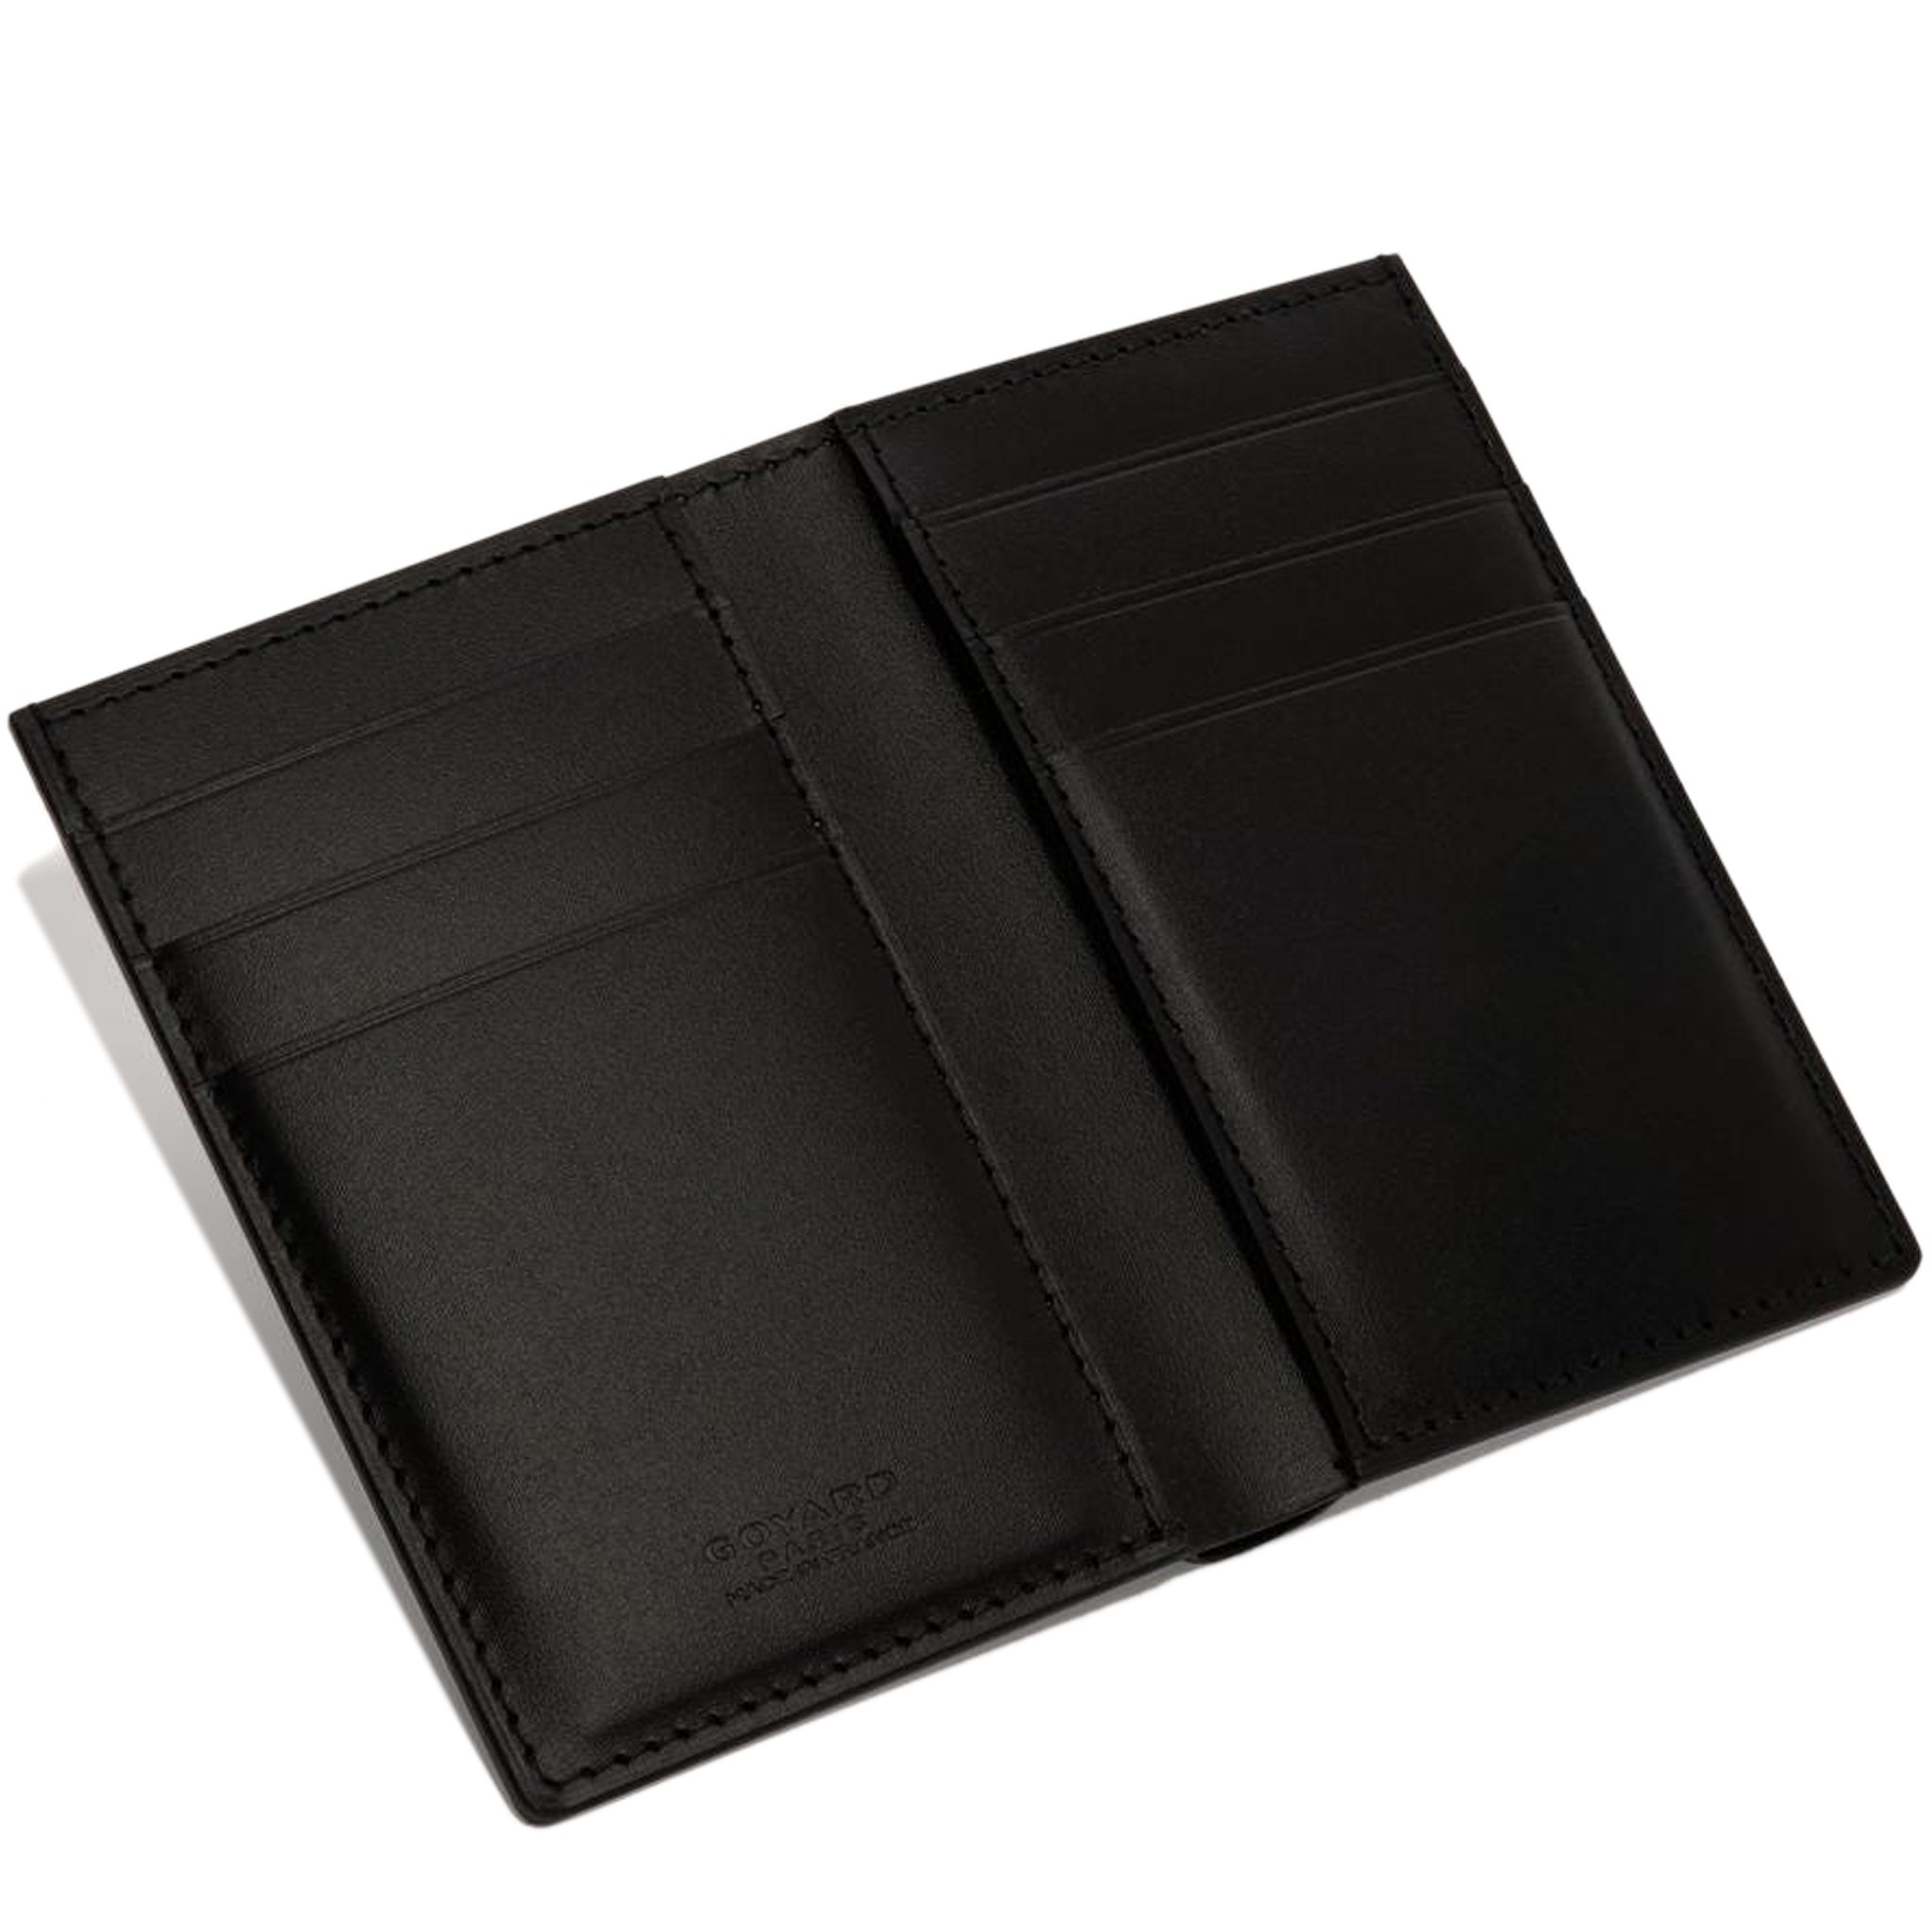 Inside view of Goyard Saint-Pierre Card Wallet Black STPIE2PMLTY01CL01P